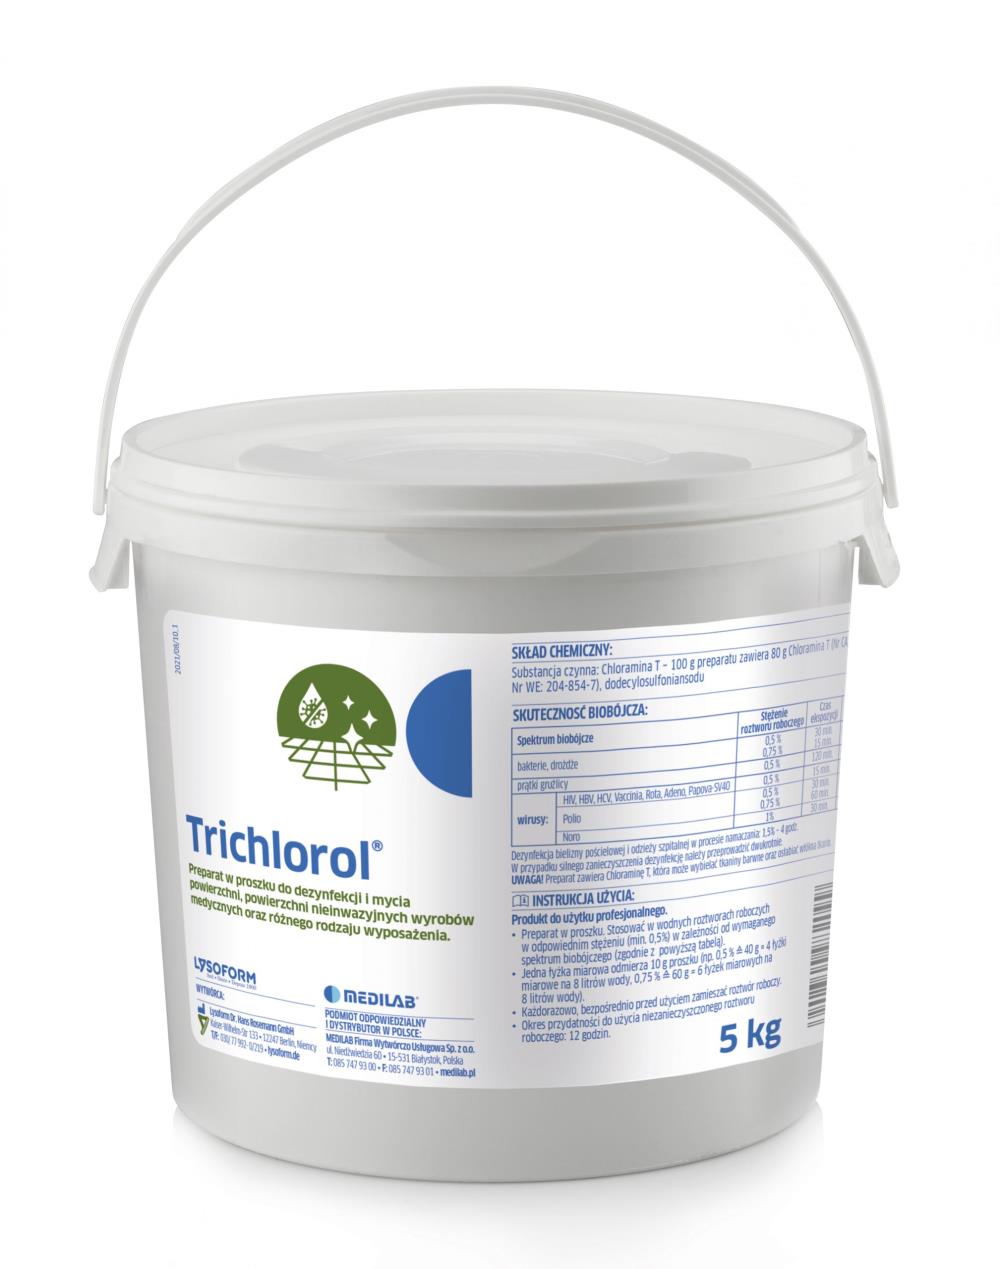 Trichlorol - proszek do dezynfekcji i mycia powierzchni wyrobów medycznych, do 5kg